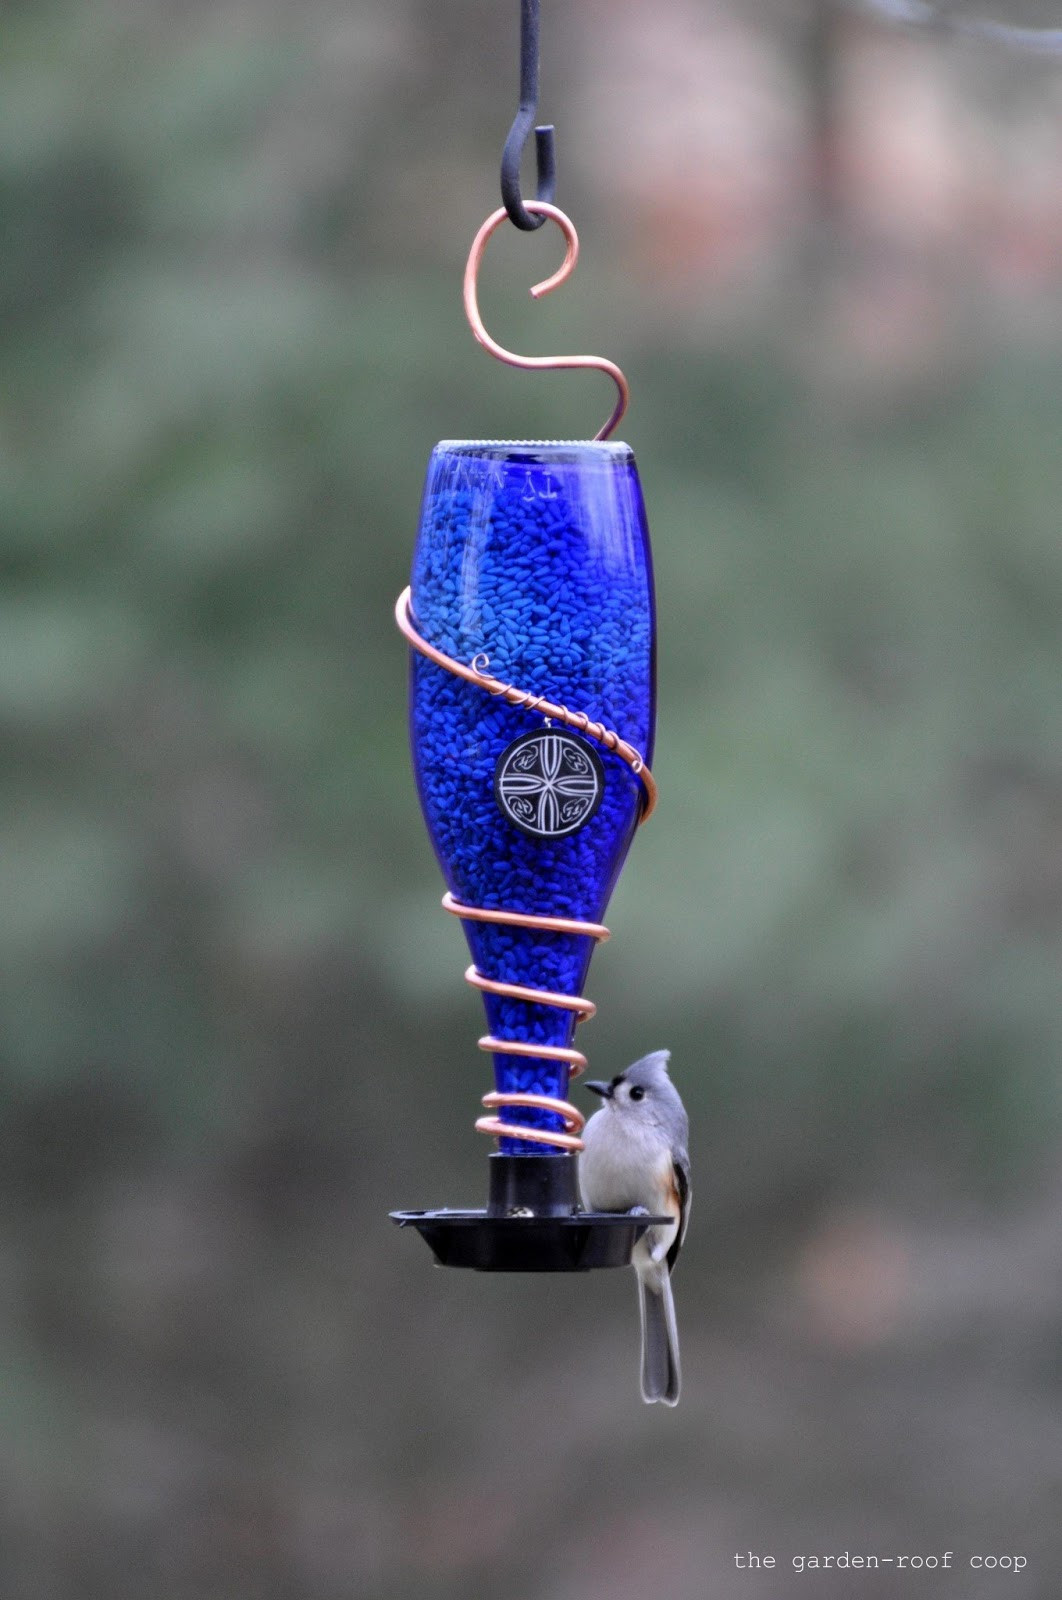 Best ideas about DIY Wine Bottle Bird Feeder
. Save or Pin Rebecca s Bird Gardens Blog DIY Glass Bottle Bird Feeders Now.